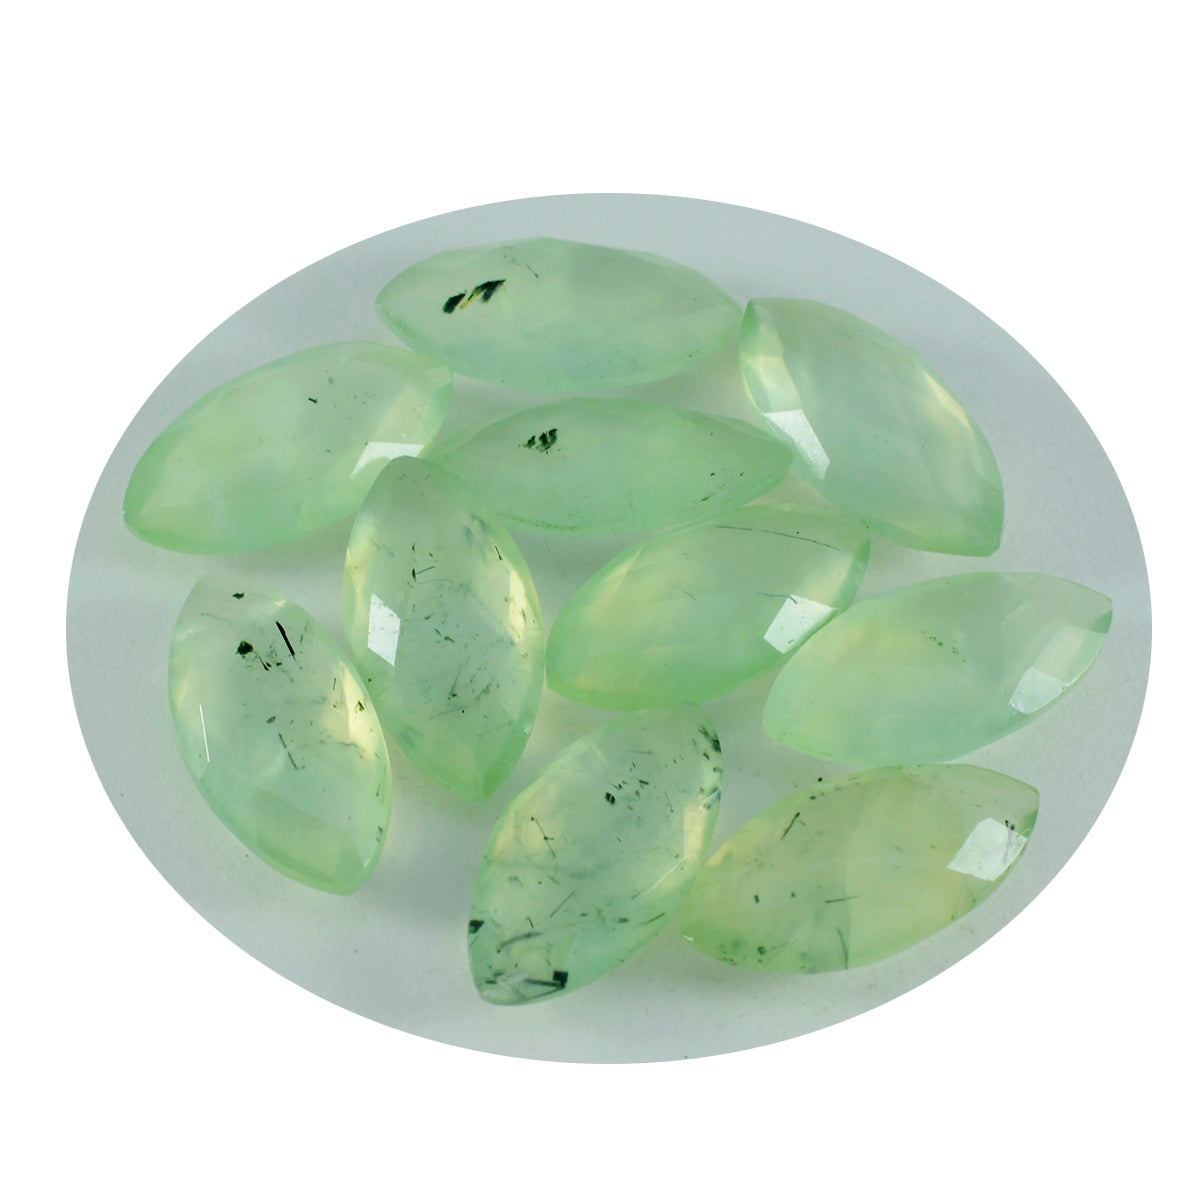 riyogems 1 pieza de prehnita verde facetada de 8x16 mm con forma de marquesa, piedra preciosa suelta de calidad A1